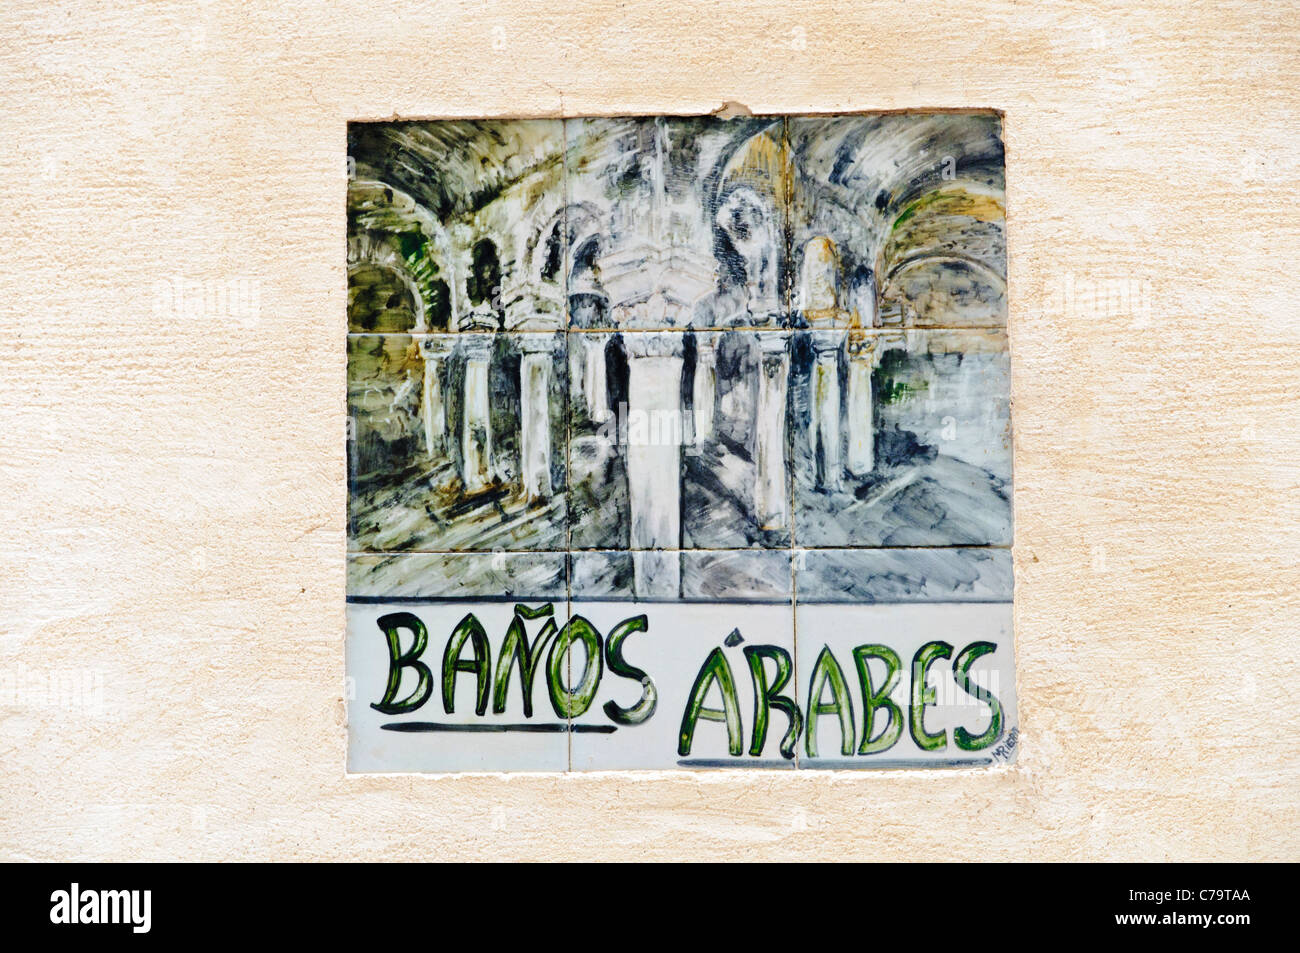 Signe, bains arabes dans le centre-ville historique de Palma de Majorque, Majorque, Îles Baléares, Espagne, Europe Banque D'Images